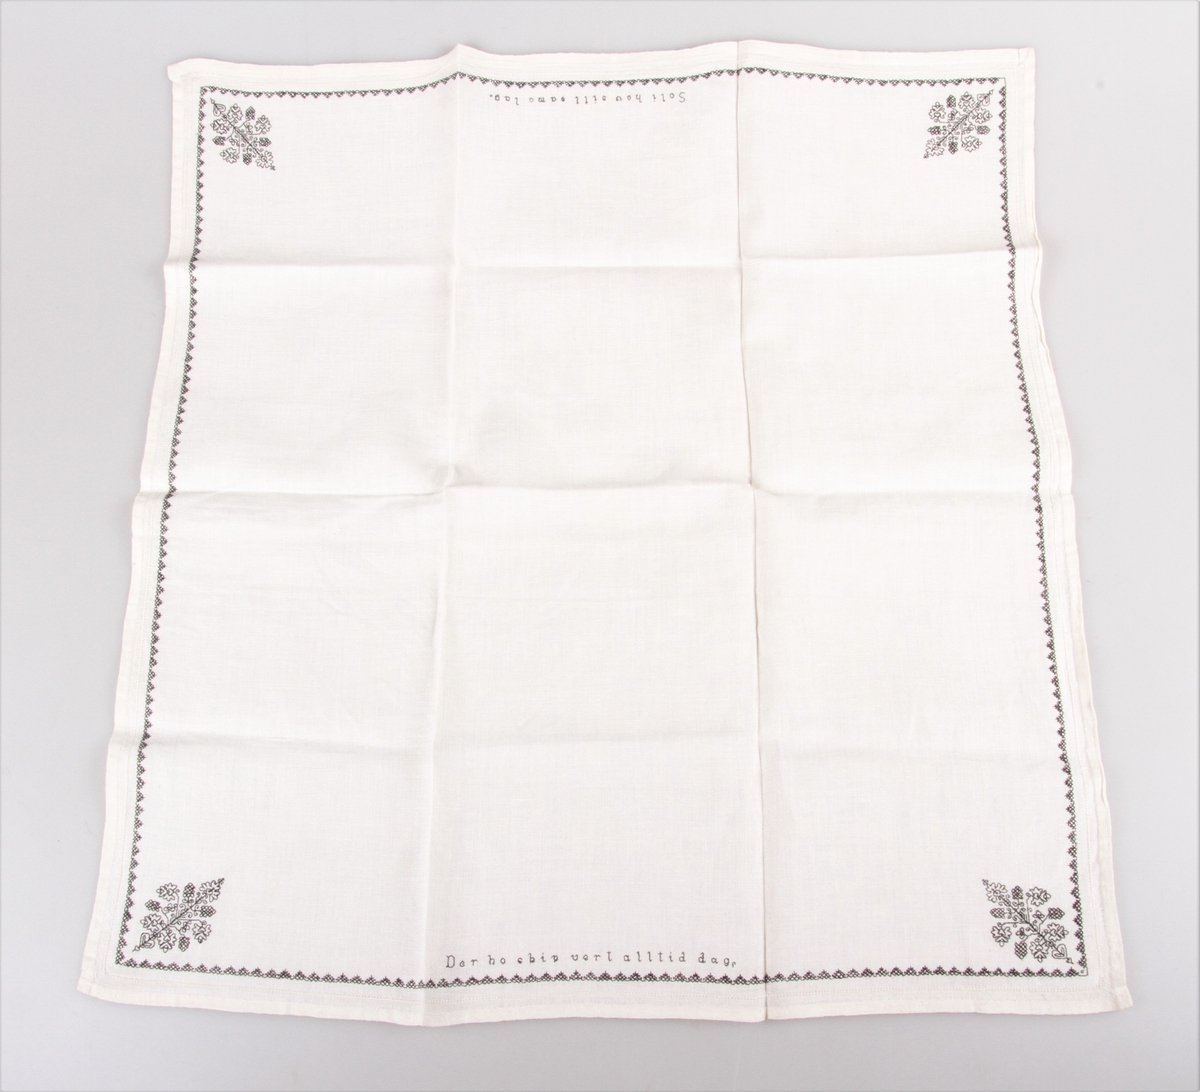 Bordduk med hvit bunn og med svart og hvit dekor. Brodert med korssting, kontursting og hullsøm, border og blomster samt tekst.